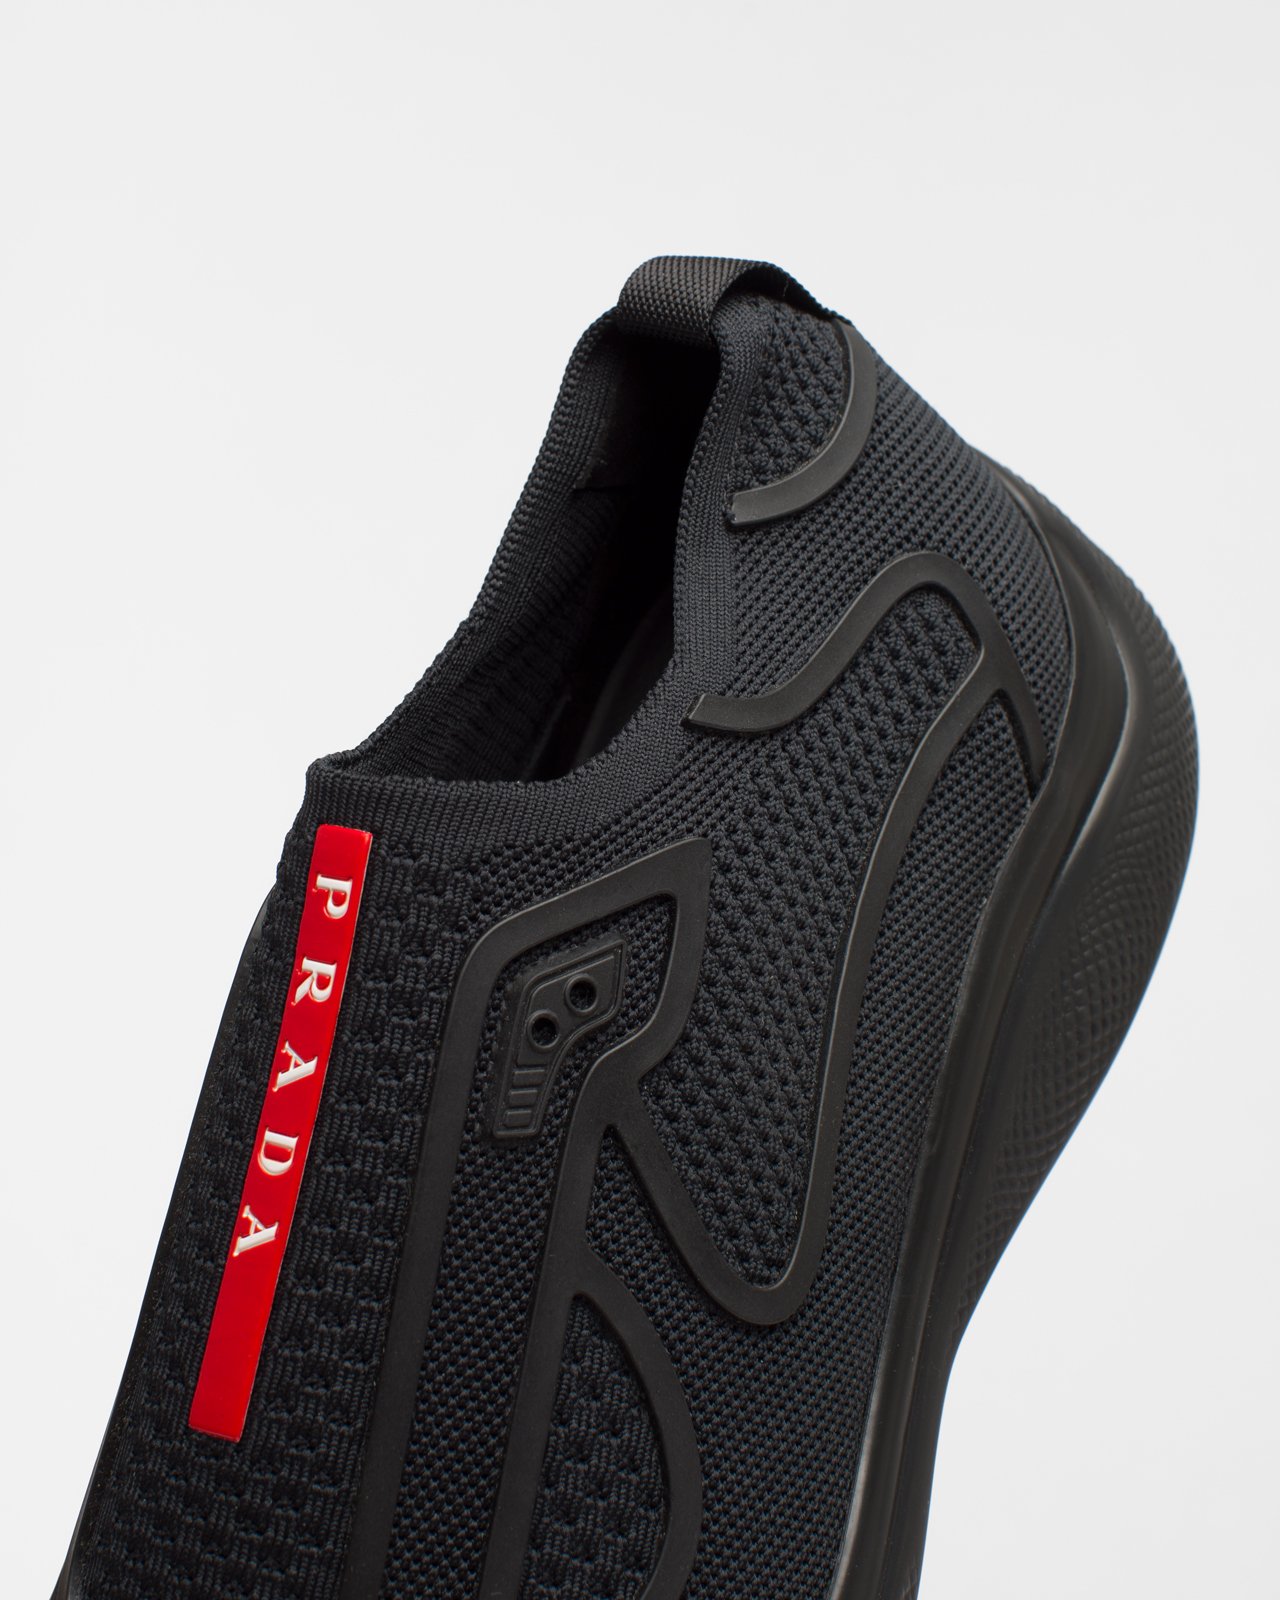 Prada - Men's Americas Cup Knit Slip-On - Footwear - Black - Image 2